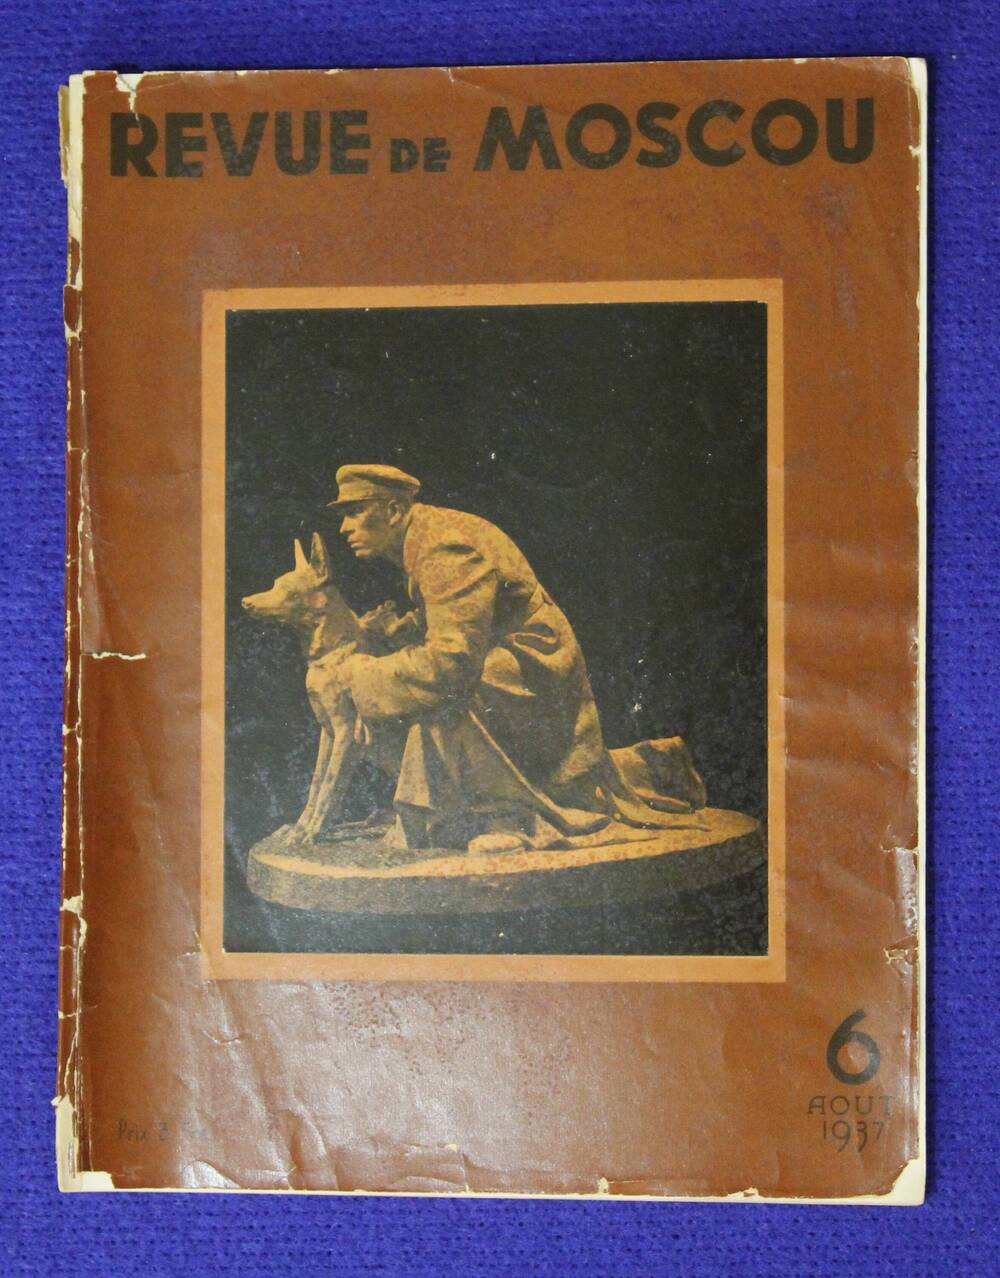 Журнал REVUE DE MOSCOU  № 6 за 1937 г.